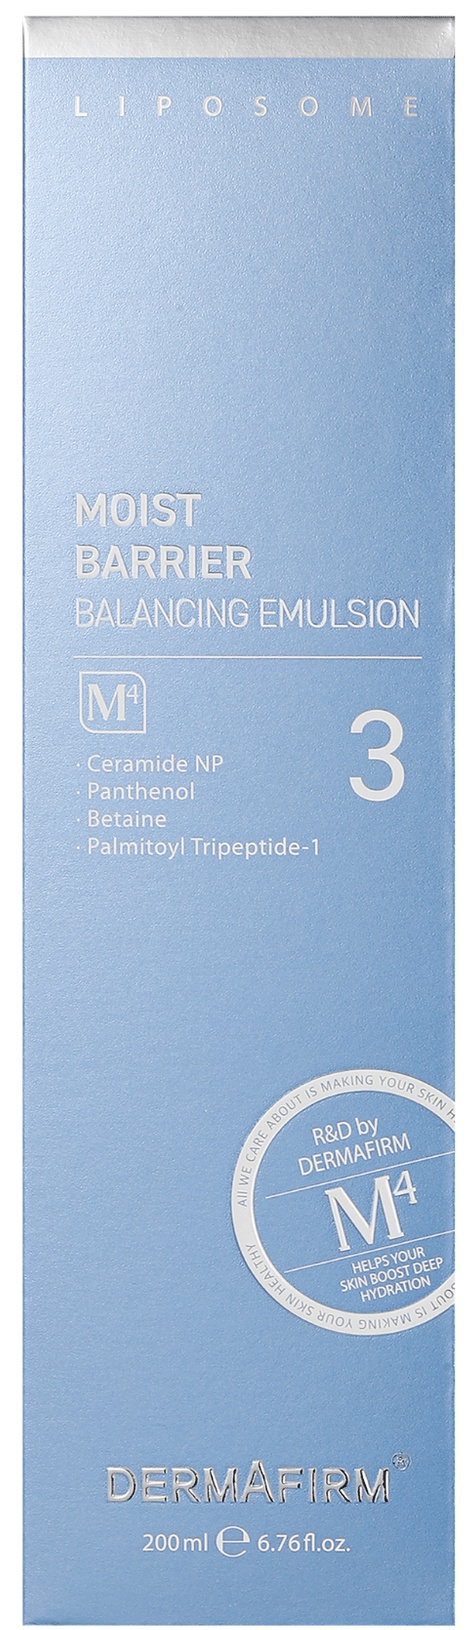 Dermafirm Moist Barrier Balancing Emulsion M4